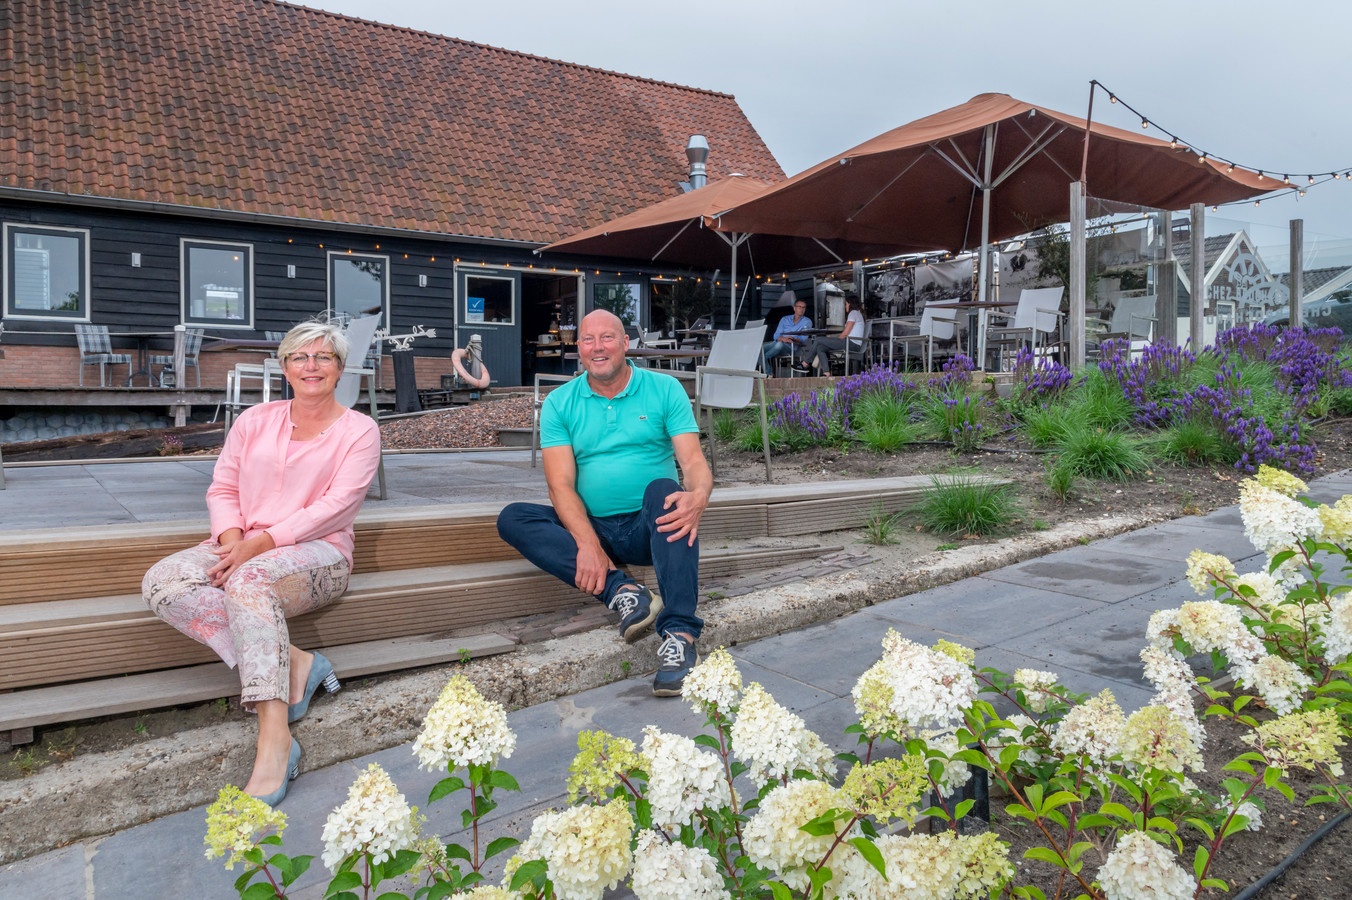 Vlot wandelen verloving Harderwijks restaurant stomverbaasd na foto op verkoopsite: 'Zijn  platgebeld met vraag of we stoppen' | Foto | destentor.nl